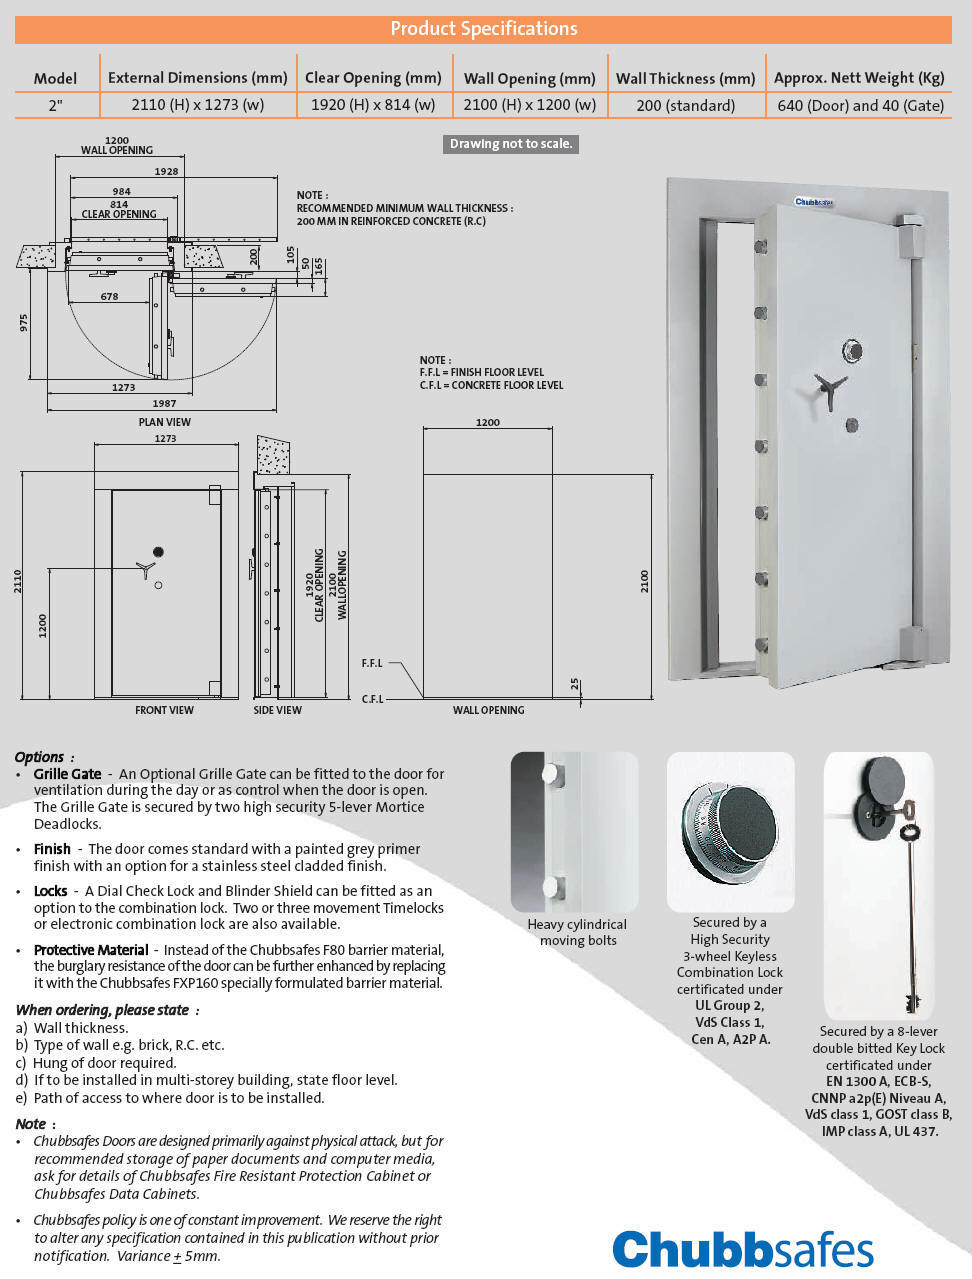 2" Strongroom Door Product Specifications